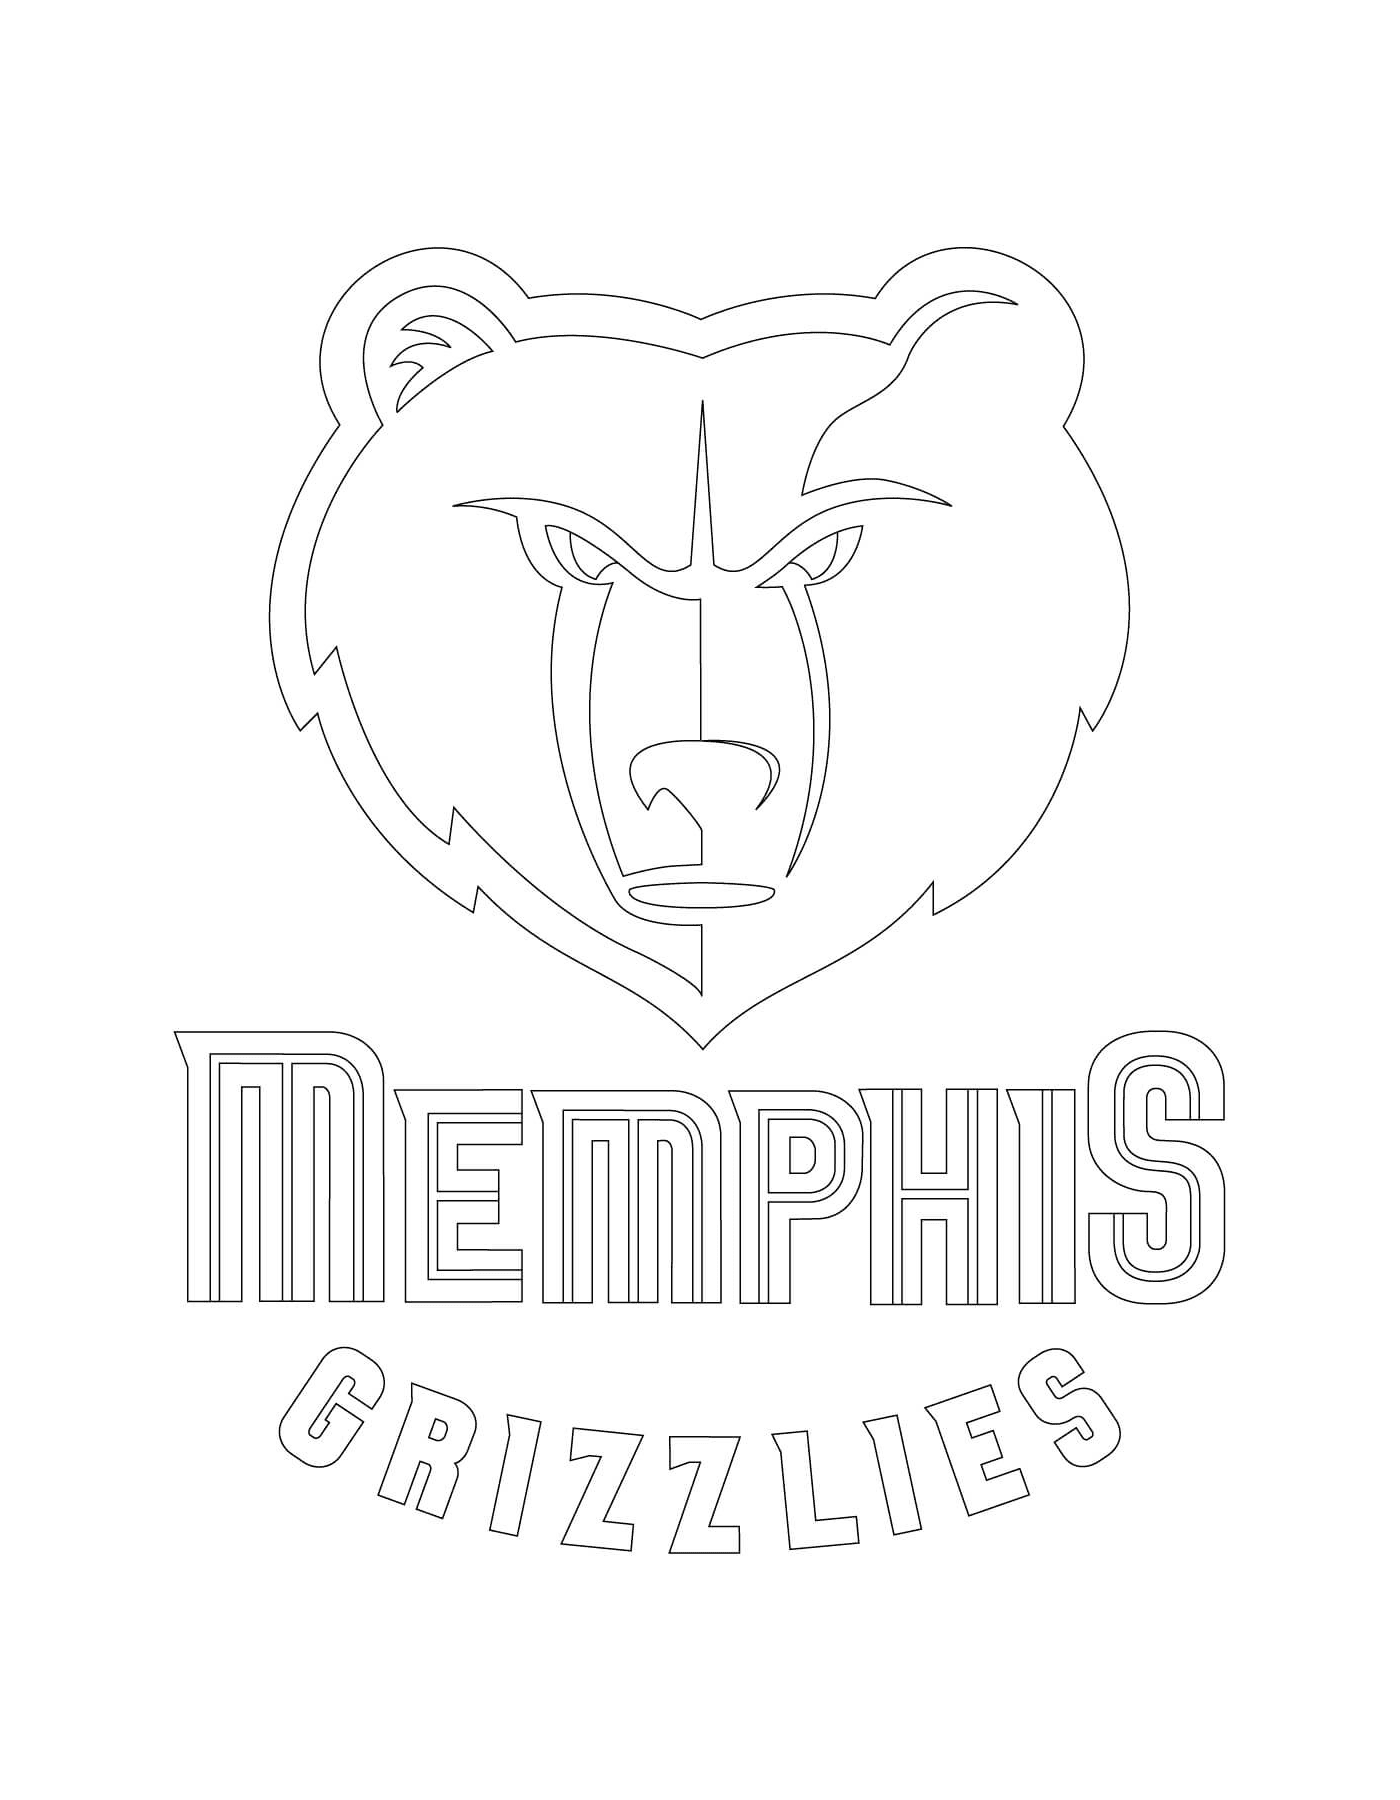  全国律师协会孟菲斯灰熊协会的标志 